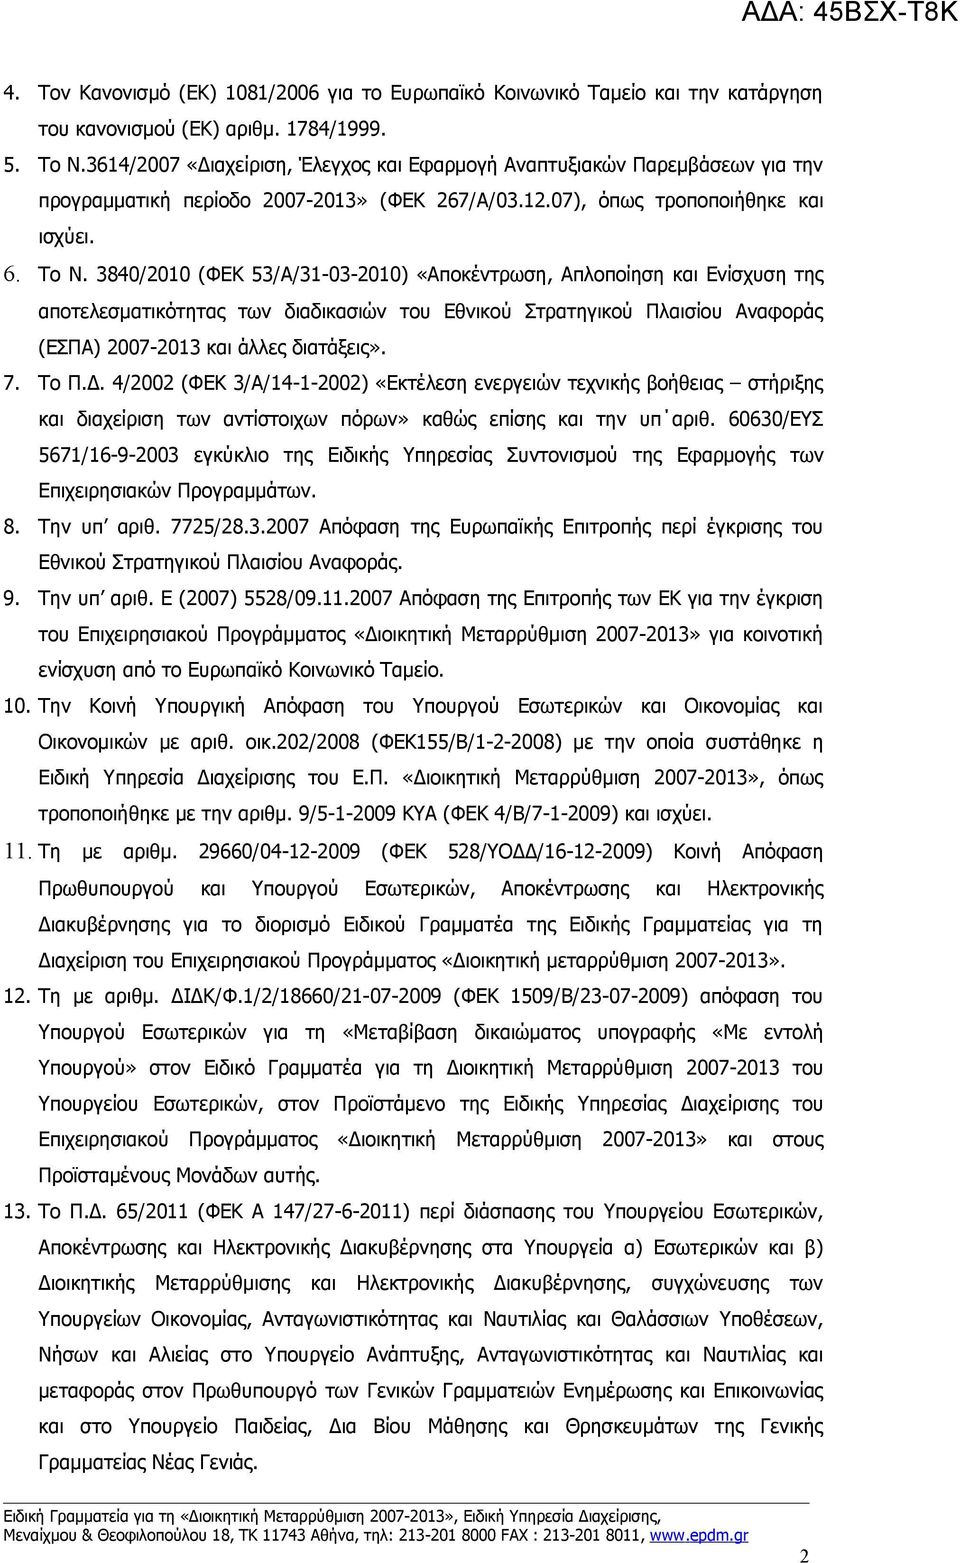 3840/2010 (ΦΕΚ 53/Α/31-03-2010) «Αποκέντρωση, Απλοποίηση και Ενίσχυση της αποτελεσματικότητας των διαδικασιών του Εθνικού Στρατηγικού Πλαισίου Αναφοράς (ΕΣΠΑ) 2007-2013 και άλλες διατάξεις». 7. Το Π.